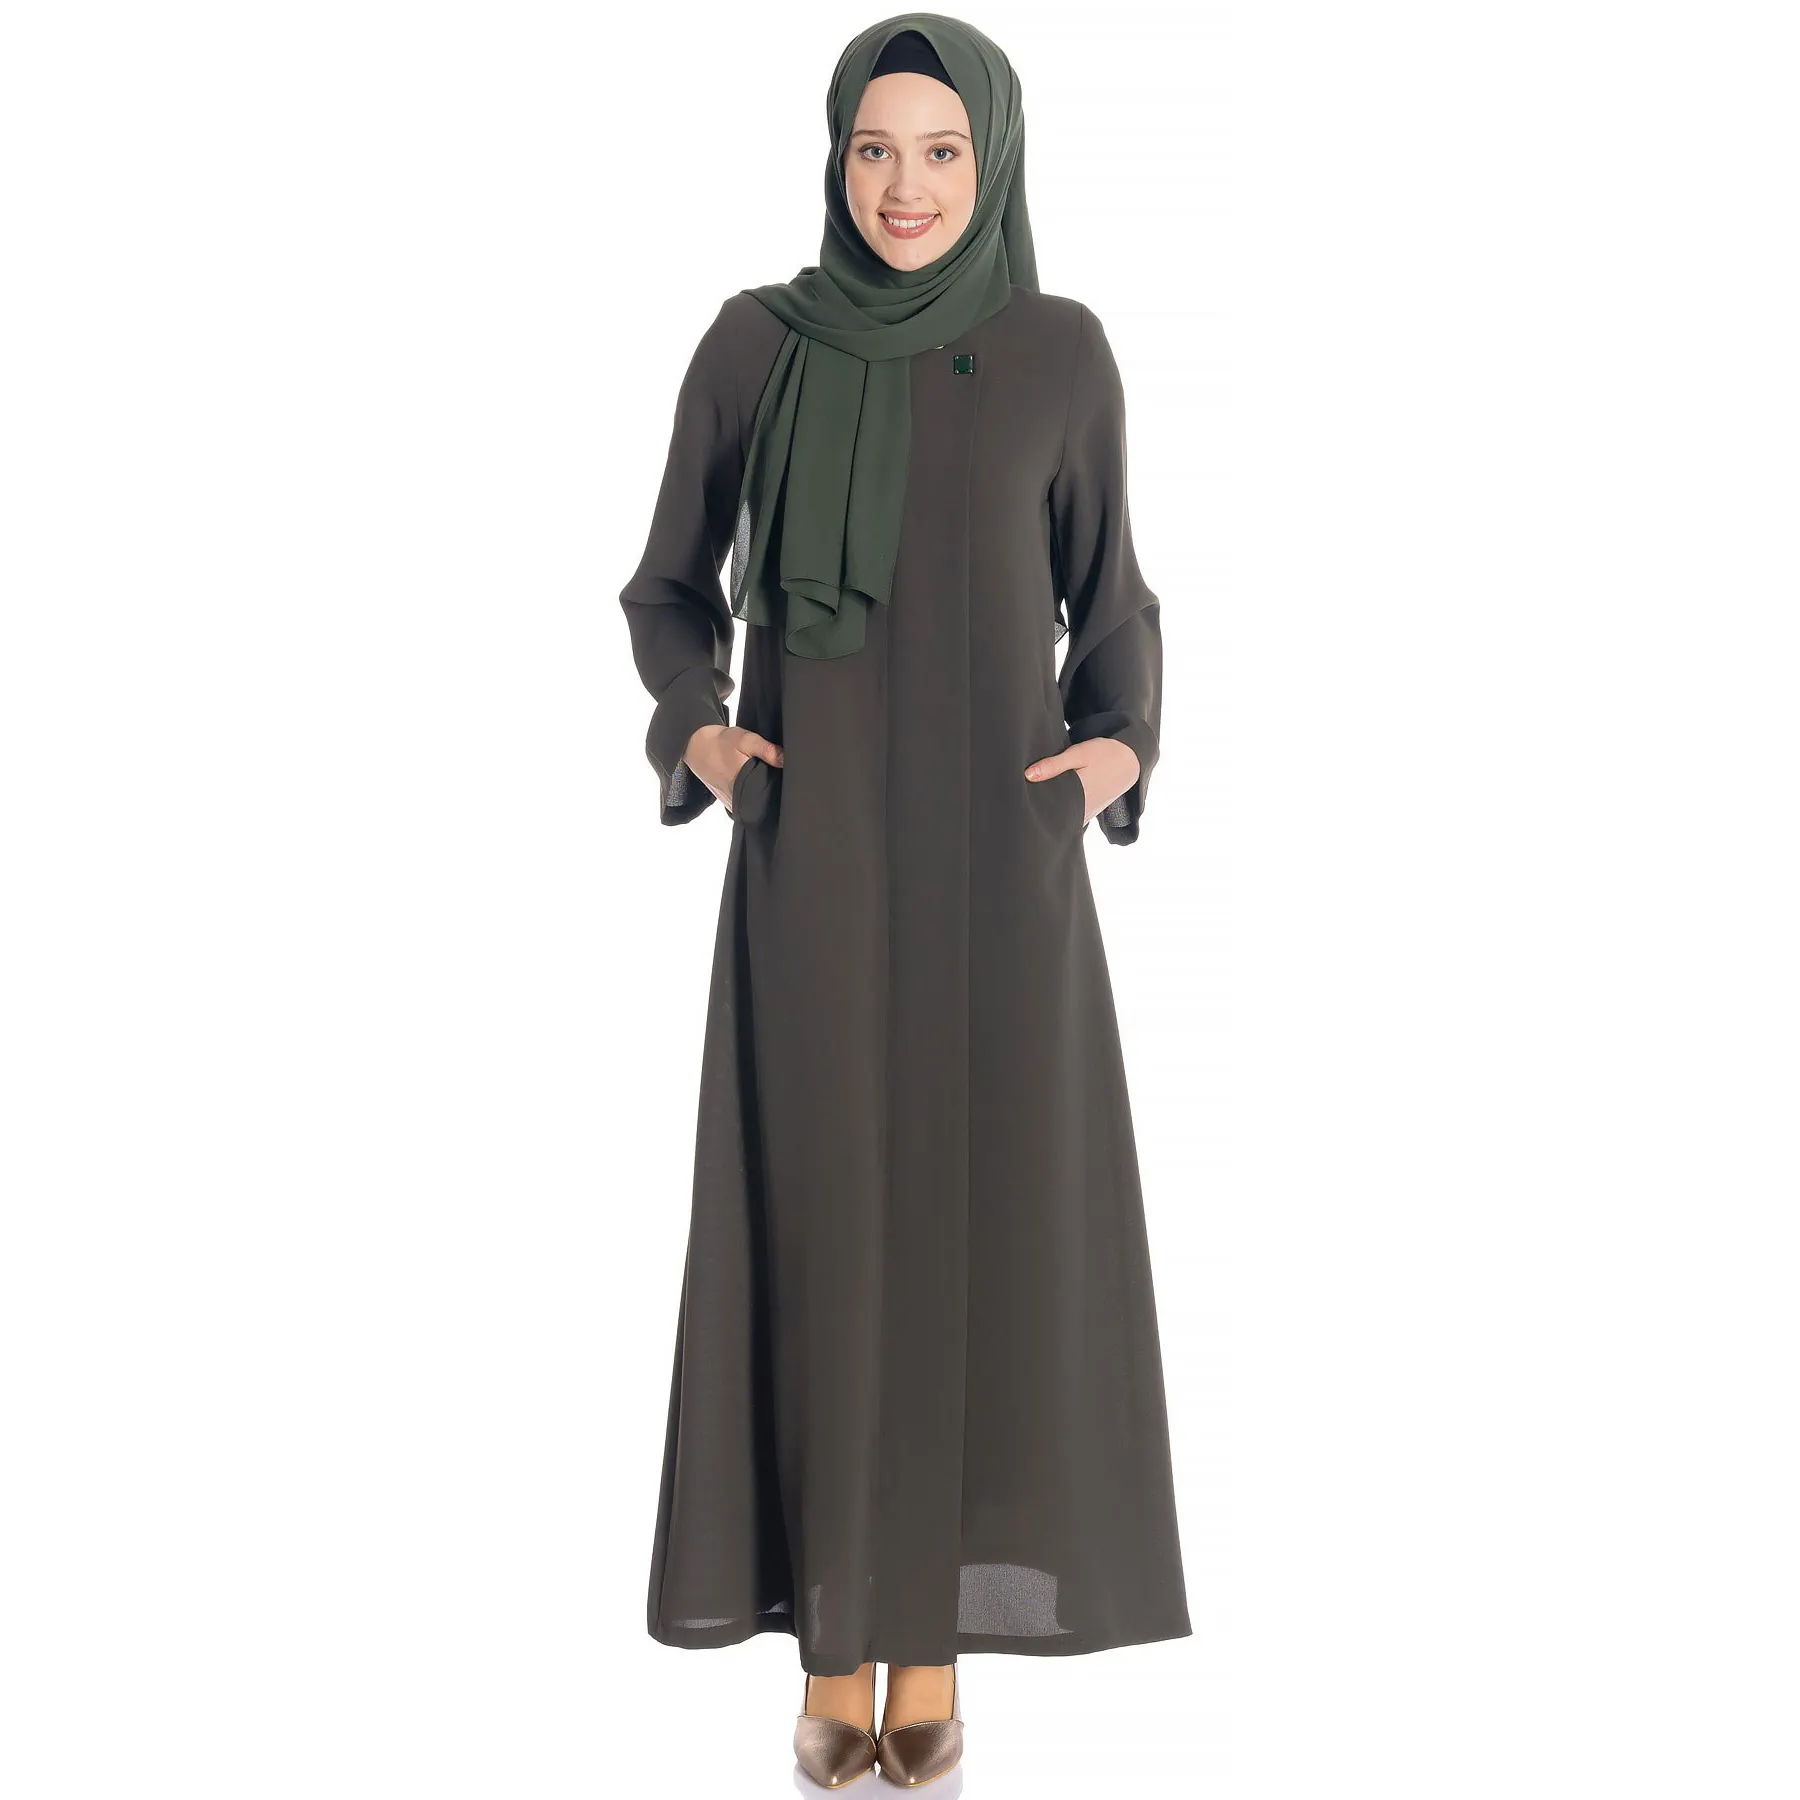 ชุดเดรสมุสลิมแขนยาวสำหรับผู้หญิง, ชุดเดรสอาบายาลำลองสไตล์อิสลามตะวันออกกลางมีกระเป๋า